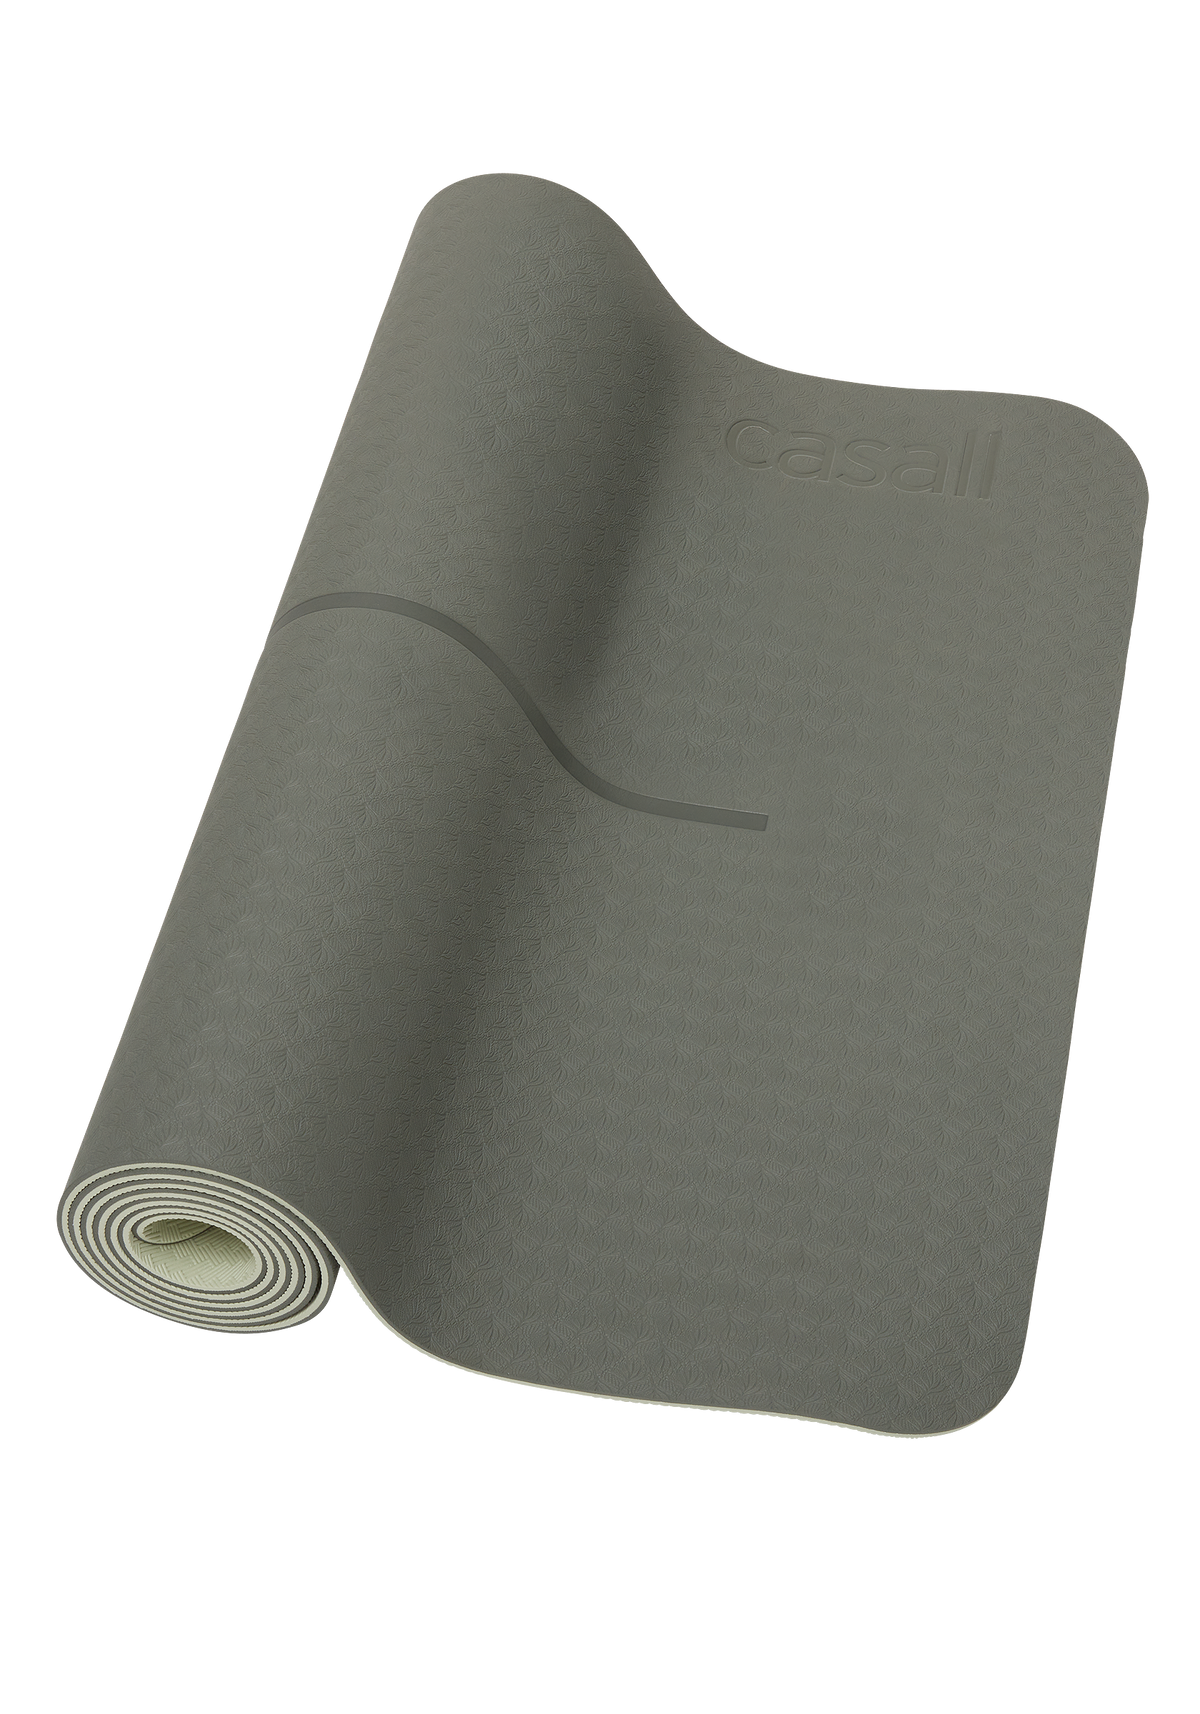 Casall Yoga Mat Position 4 mm